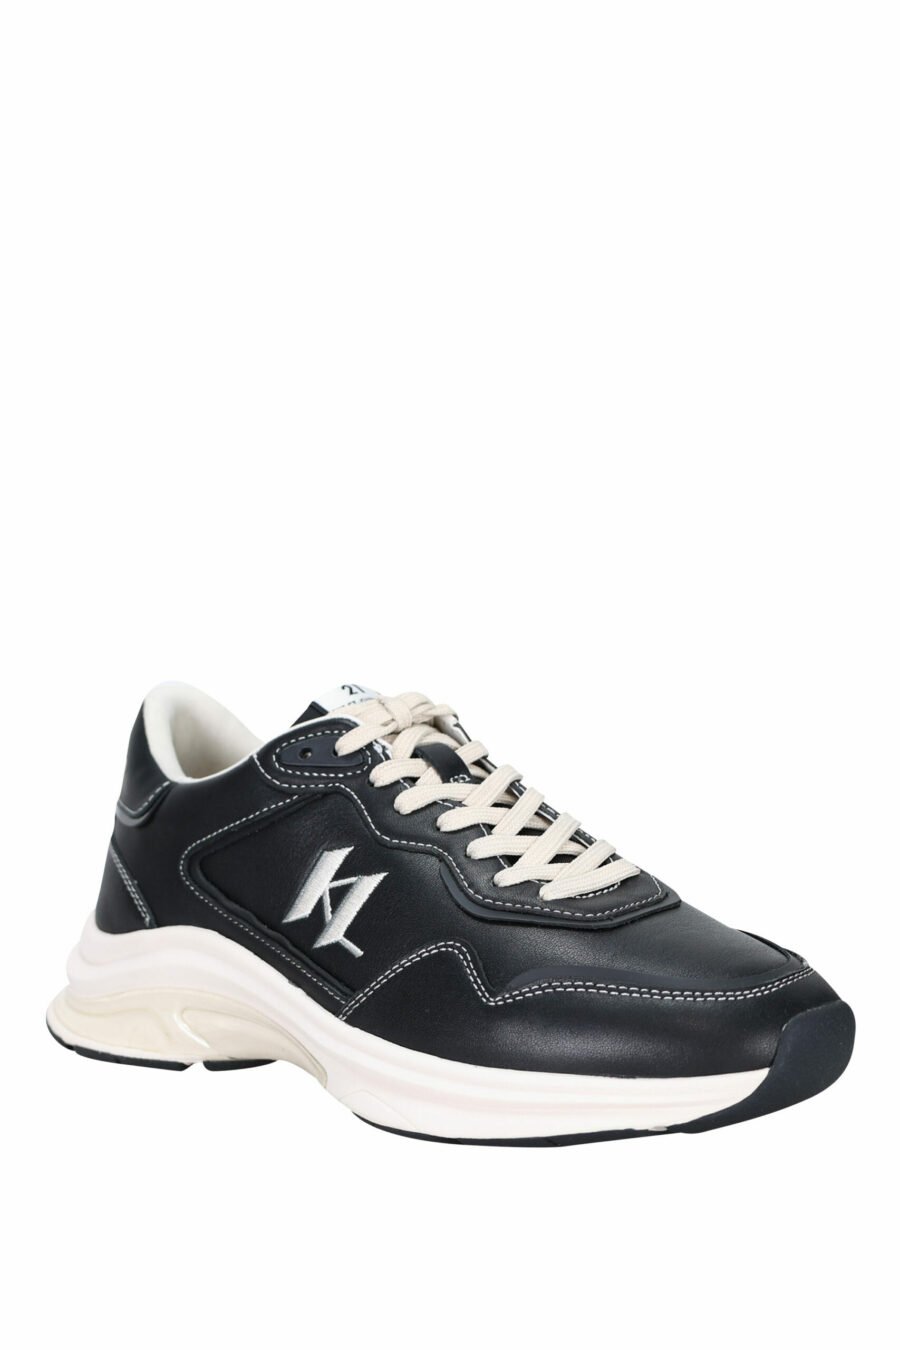 Zapatillas negras "lux finesse" con logo "KL" - 5059529330841 1 scaled